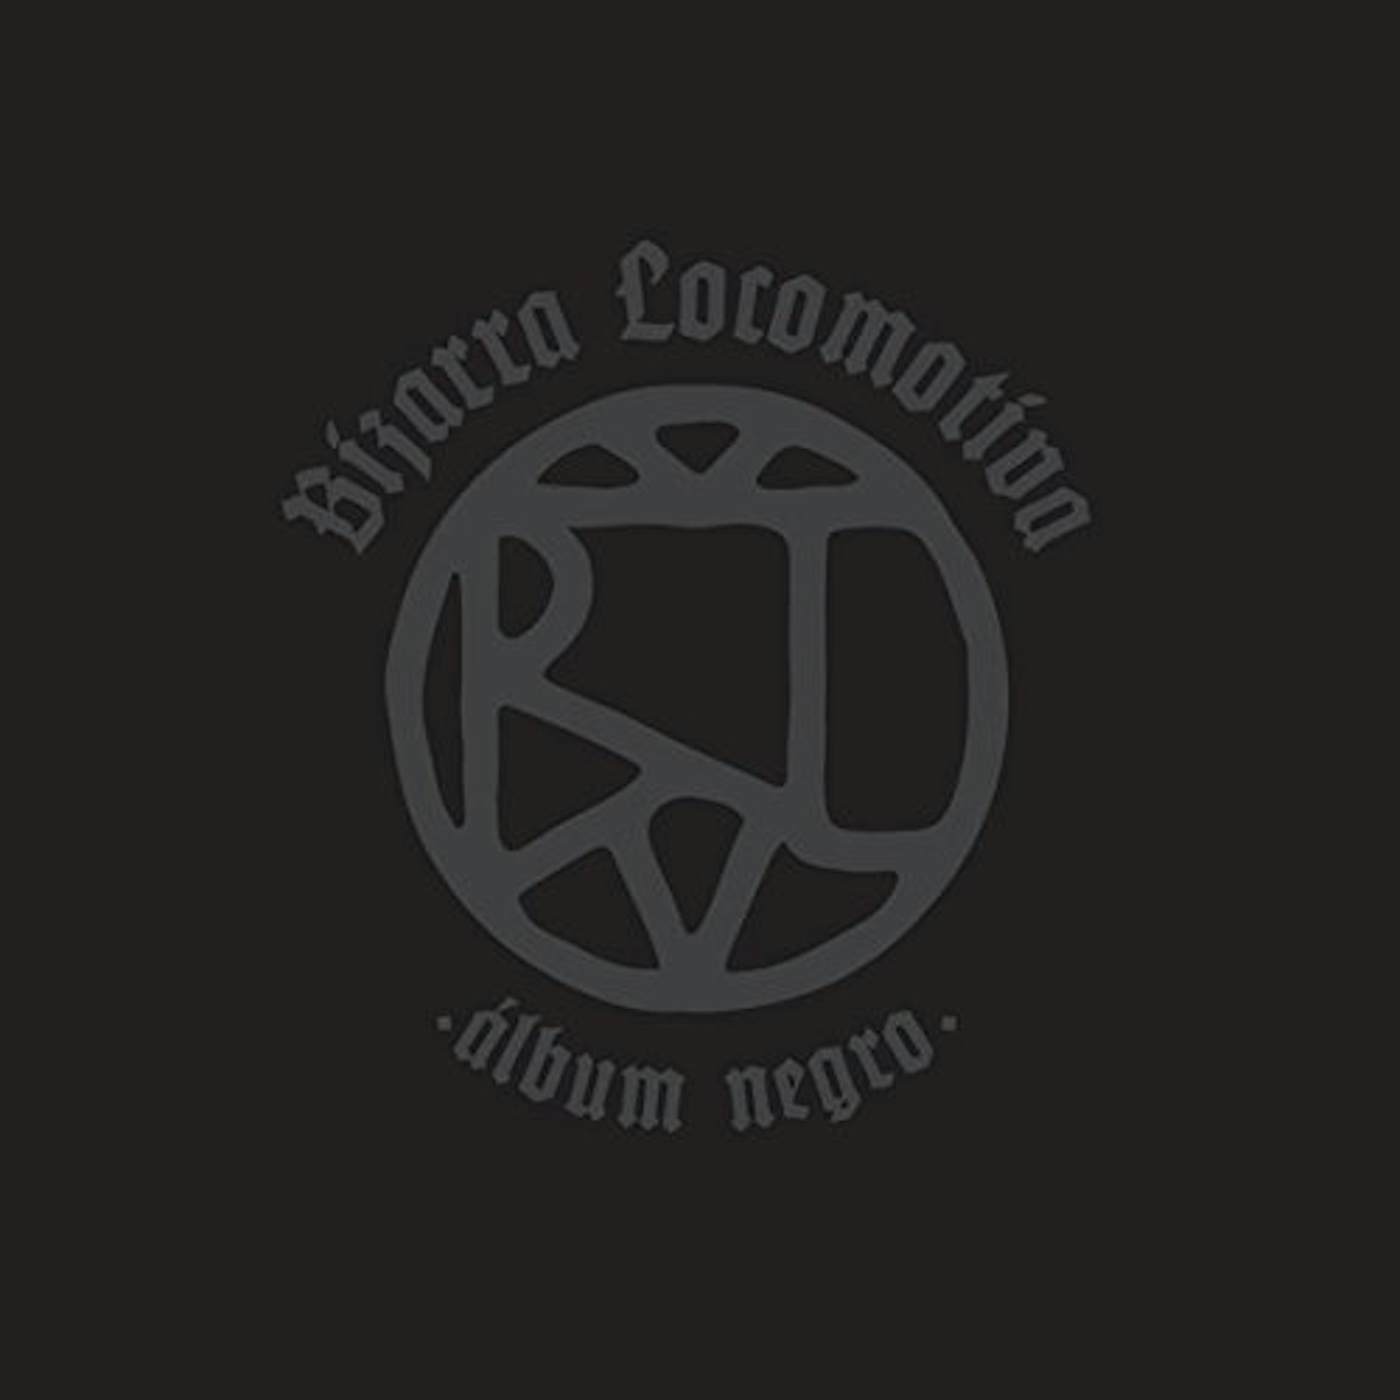 Bizarra Locomotiva ALBUM NEGRO / BLACK ALBUM CD